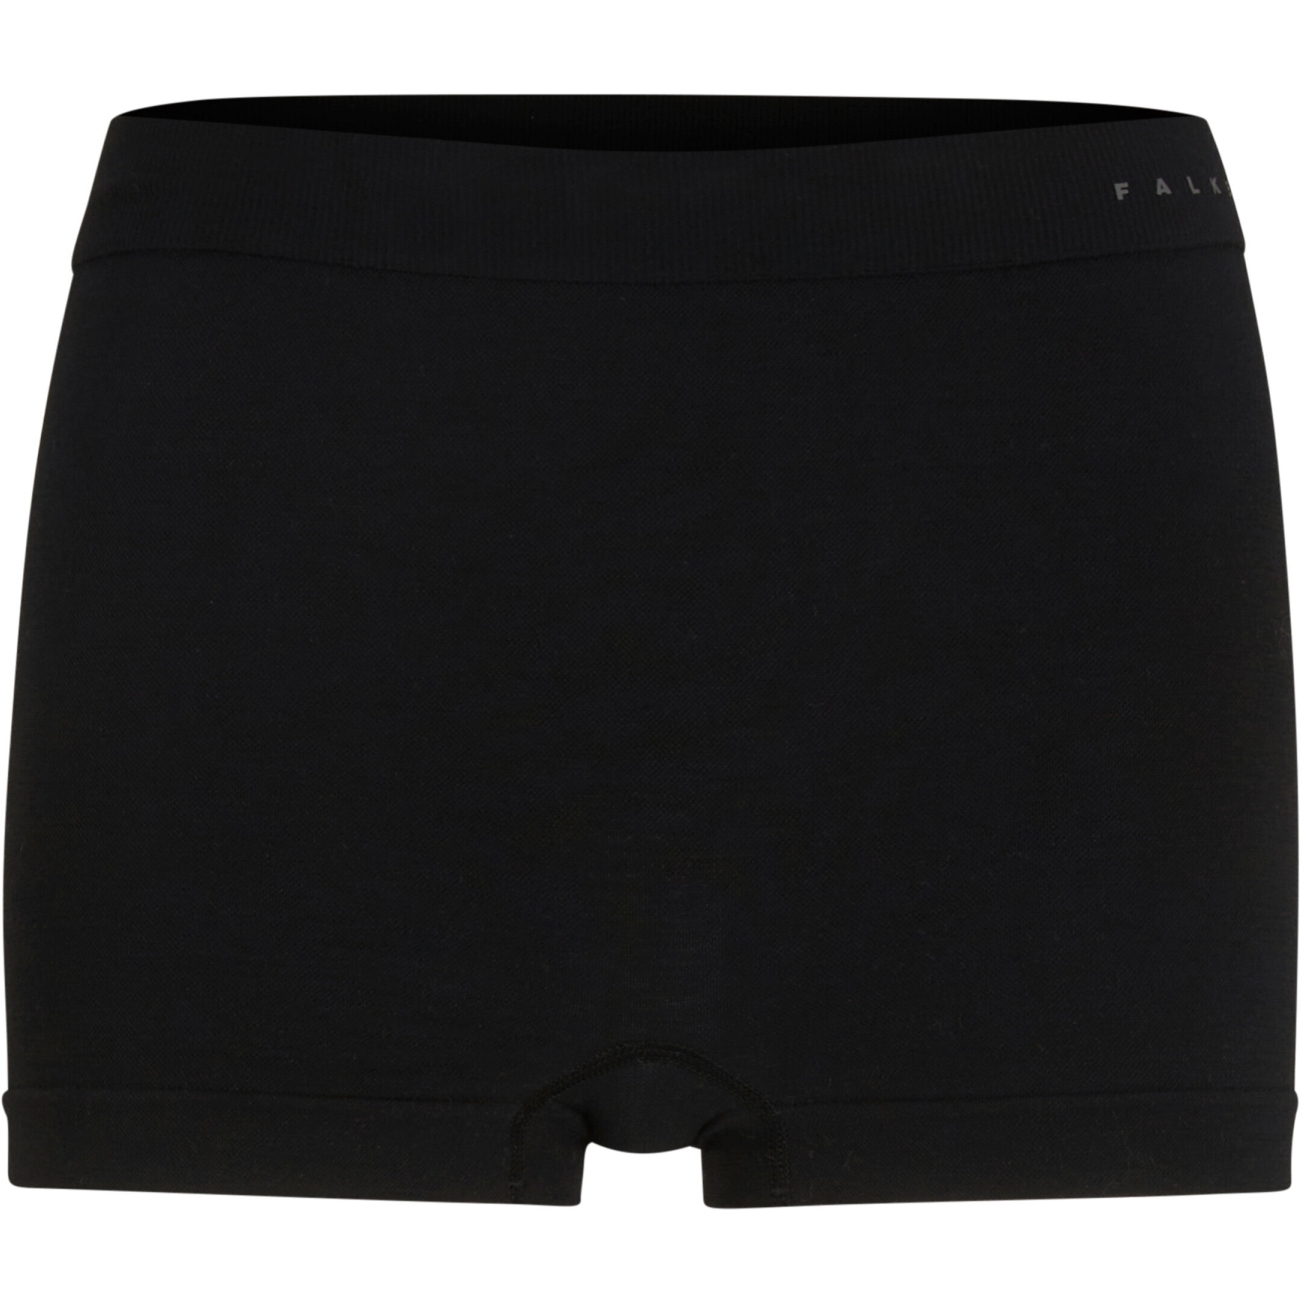 Produktbild von Falke Wool-Tech Light Panties Damen - schwarz 3000